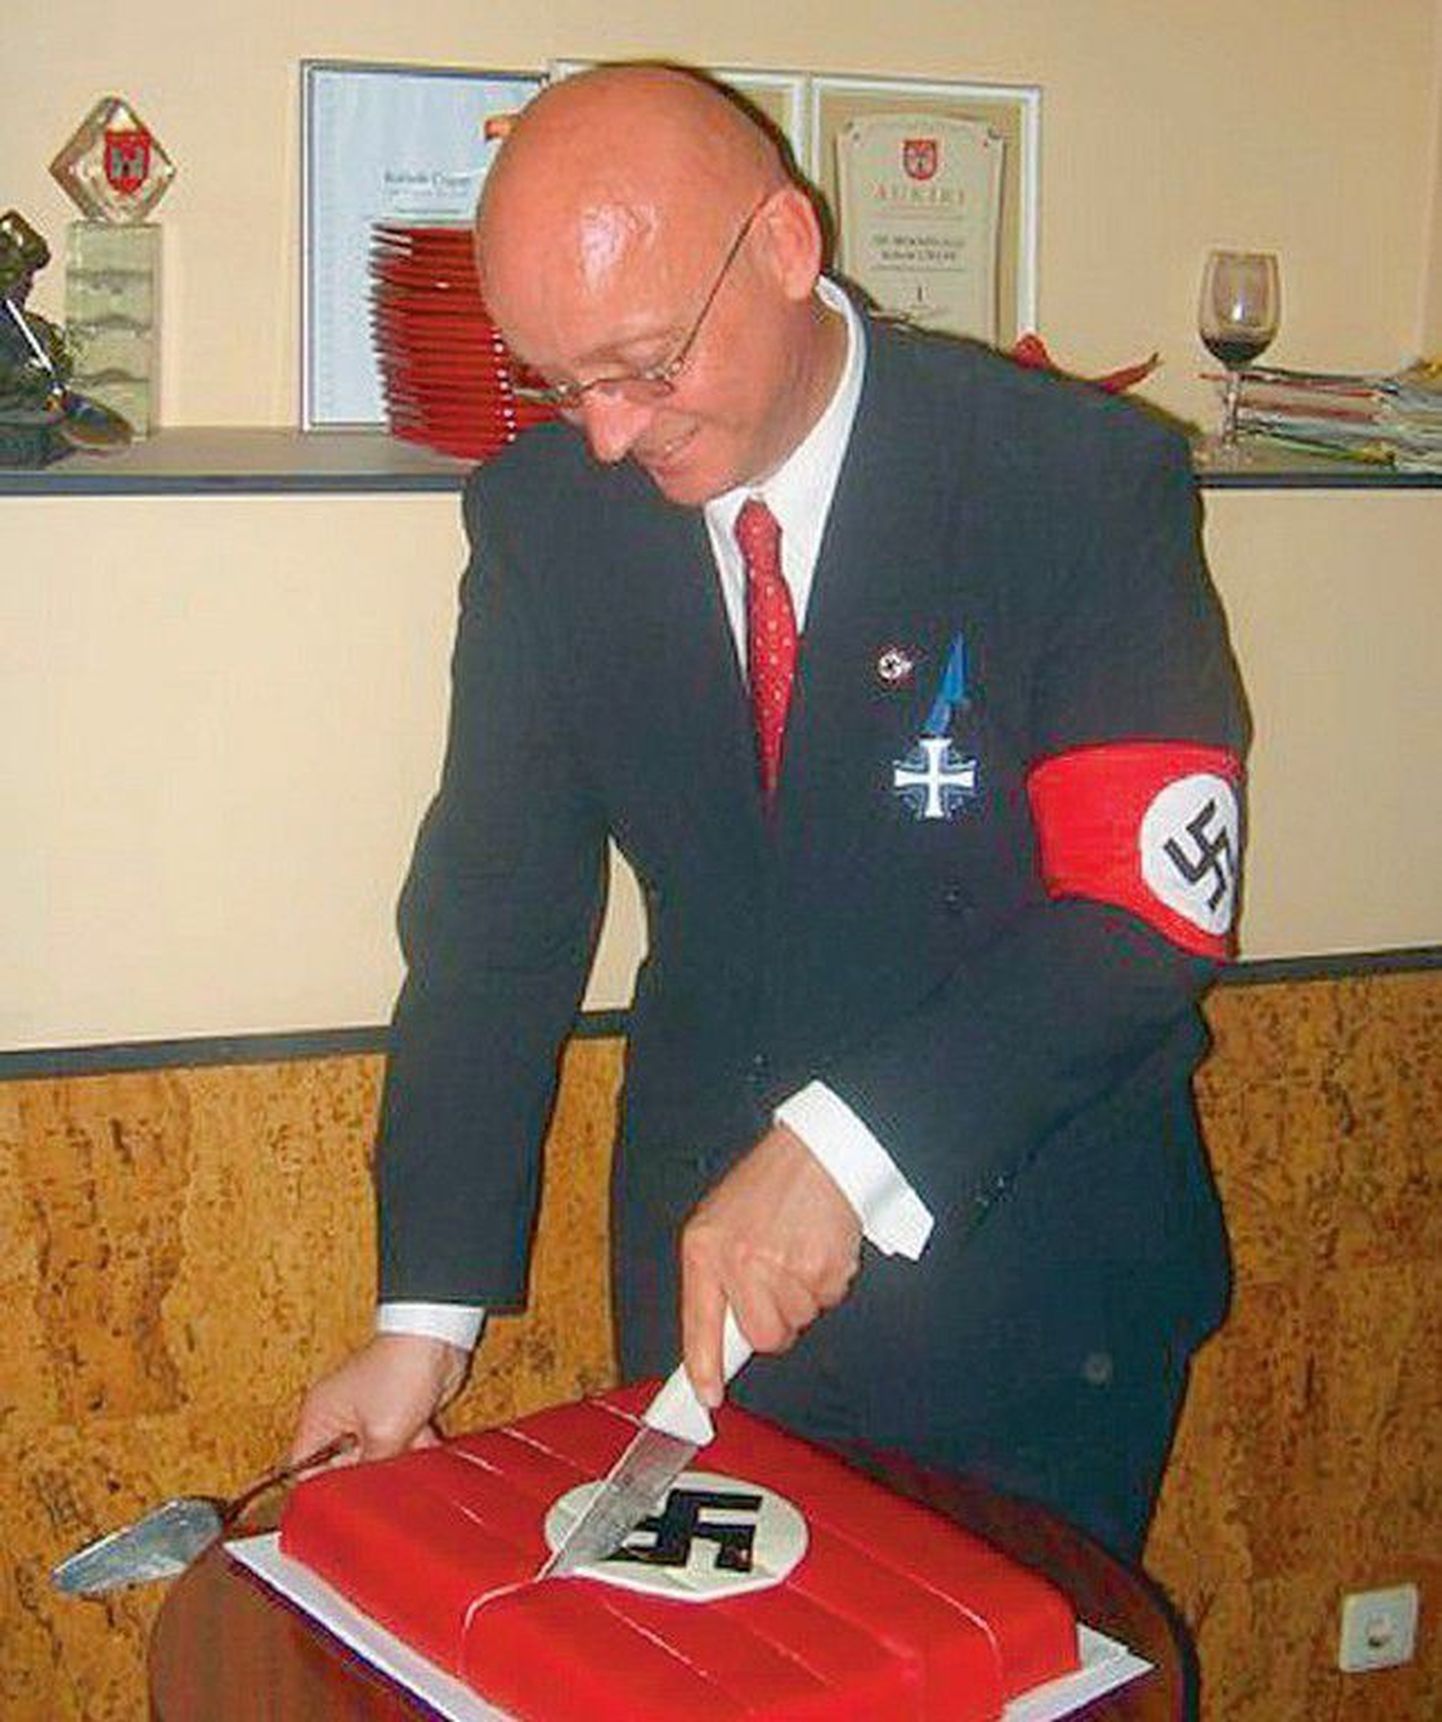 Haakristi ja Maarjamaa Risti kandev Risto Teinonen lõikamas lahti svastikaga torti, tähistades
juutide tapmisele pühendatud Wannsee konverentsi aastapäeva.